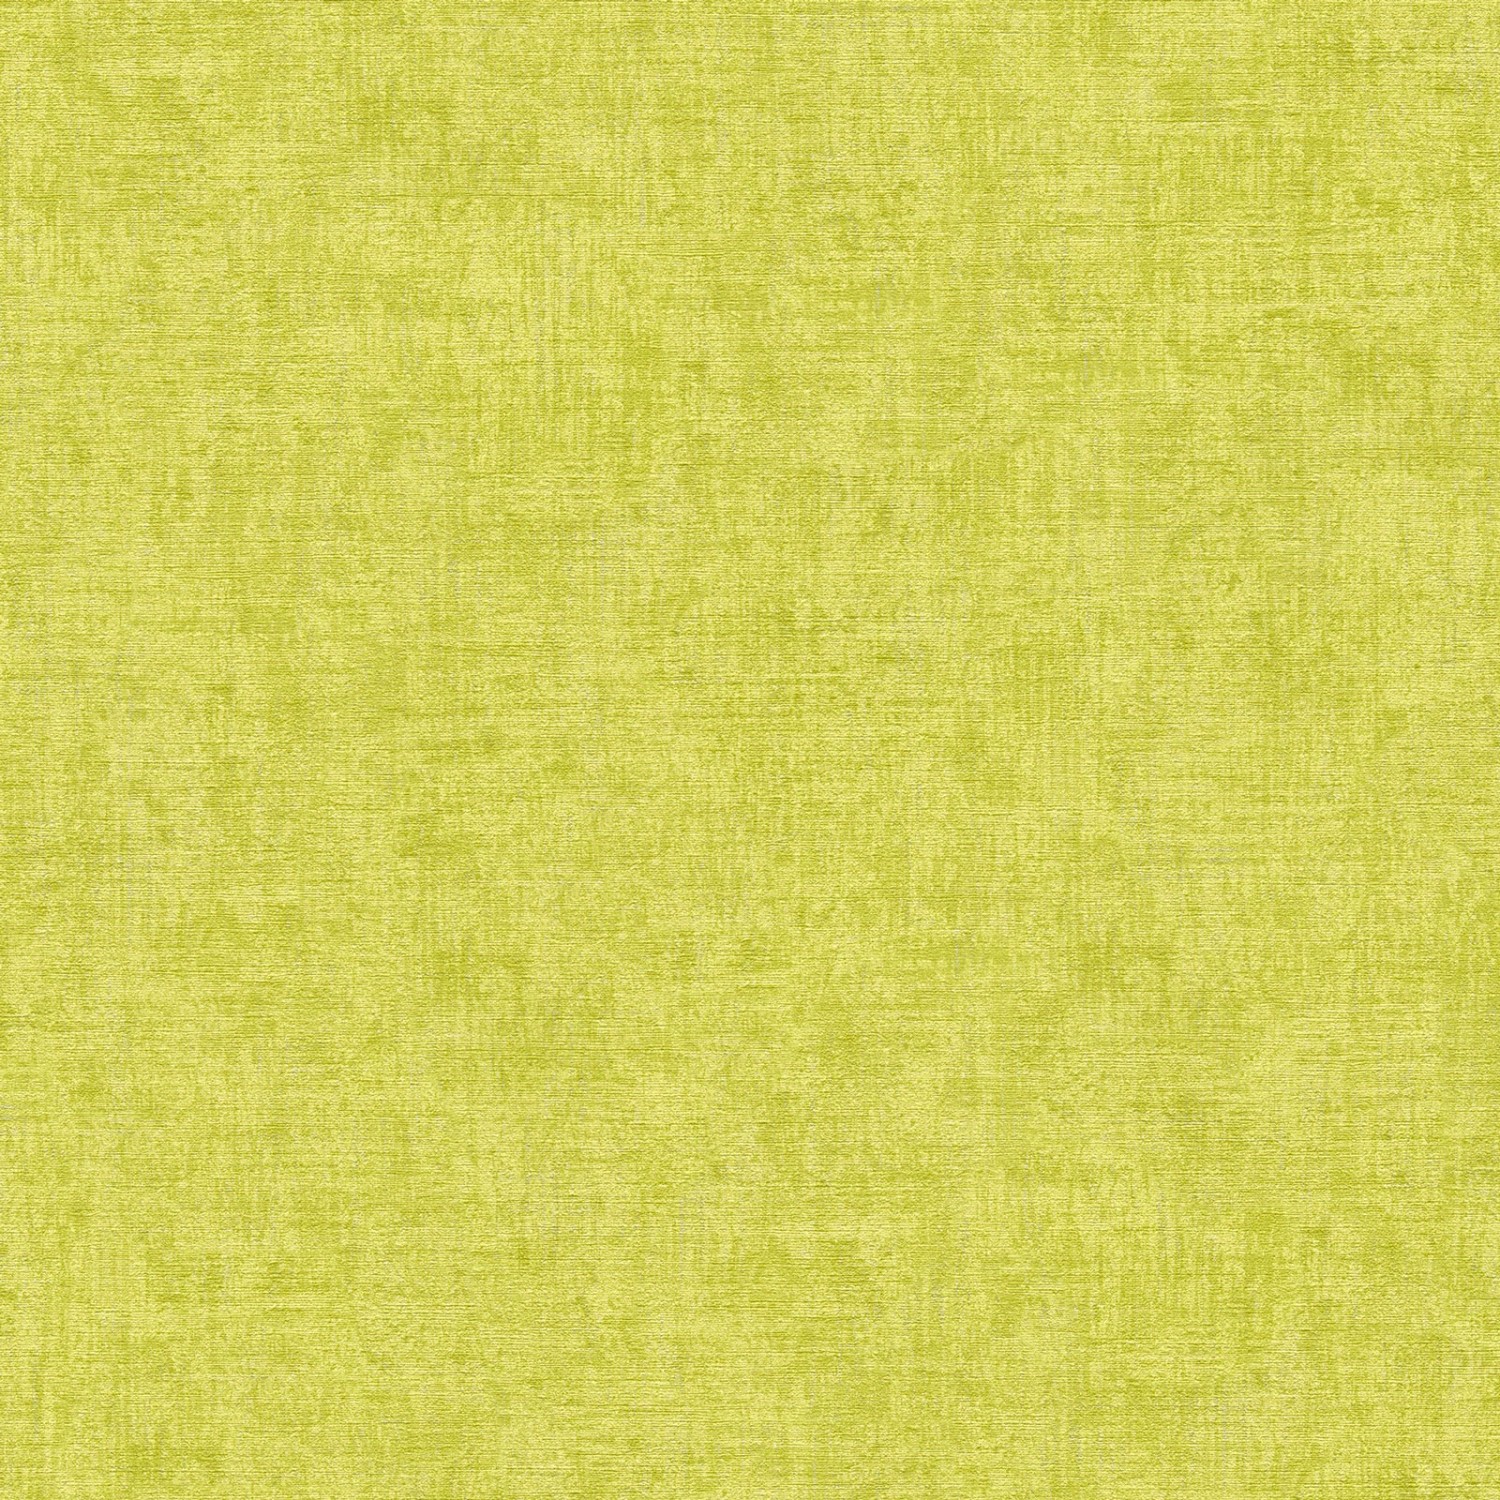 Bricoflor Uni Tapete in Gelb Grün Leinenoptik Vinyl Vliestapete Abwaschbar Wohnzimmer und Kinderzimmer Wandtapete in Tex